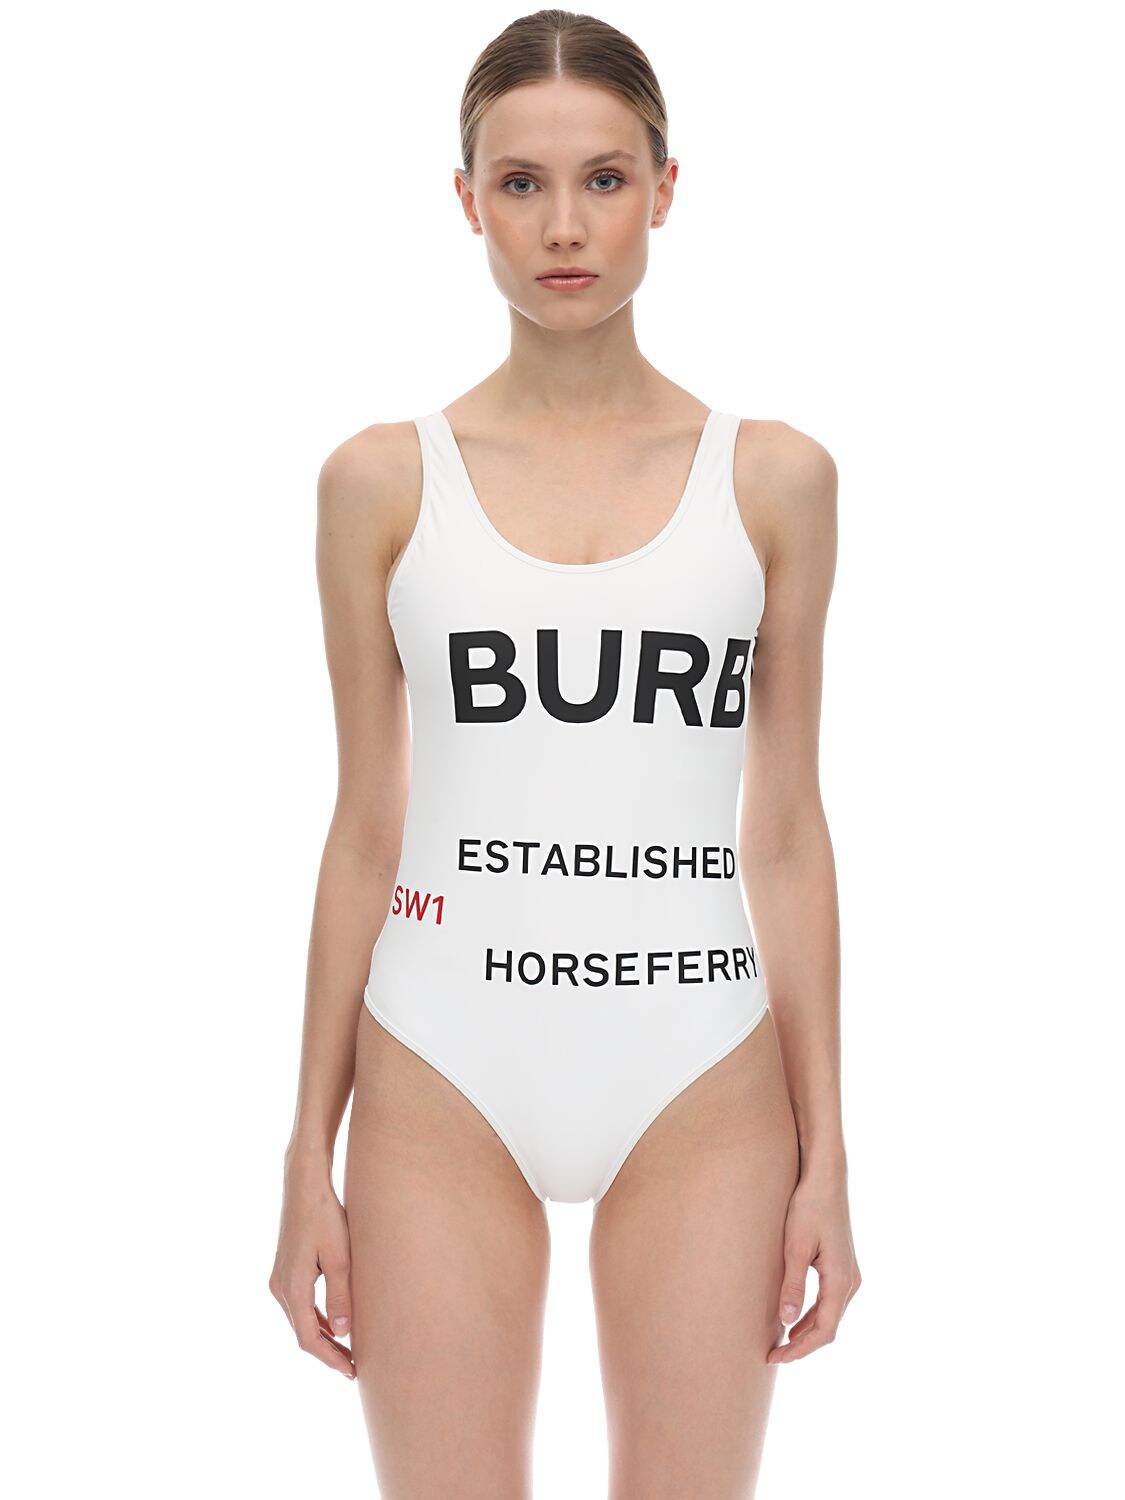 burberry swimwear womens